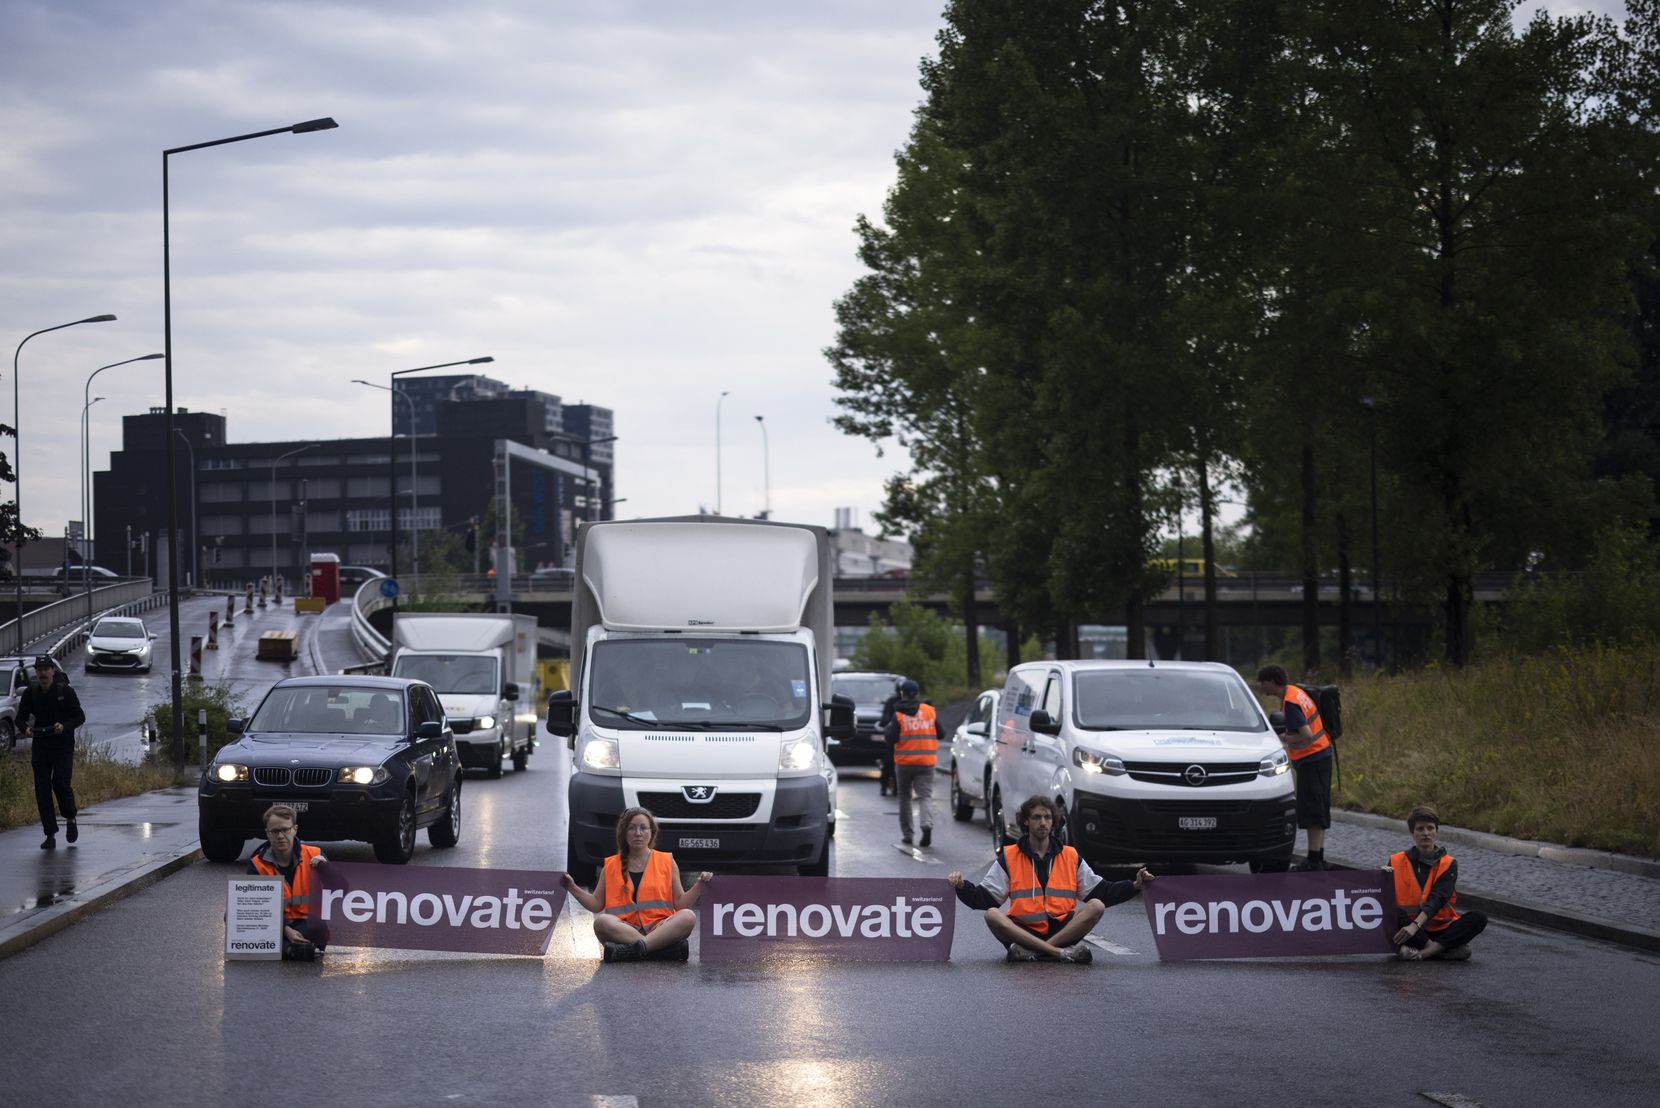 Vier Personen sitzen mit Transarenten mit der Aufschrift «Renovate» auf einer Strasse. 